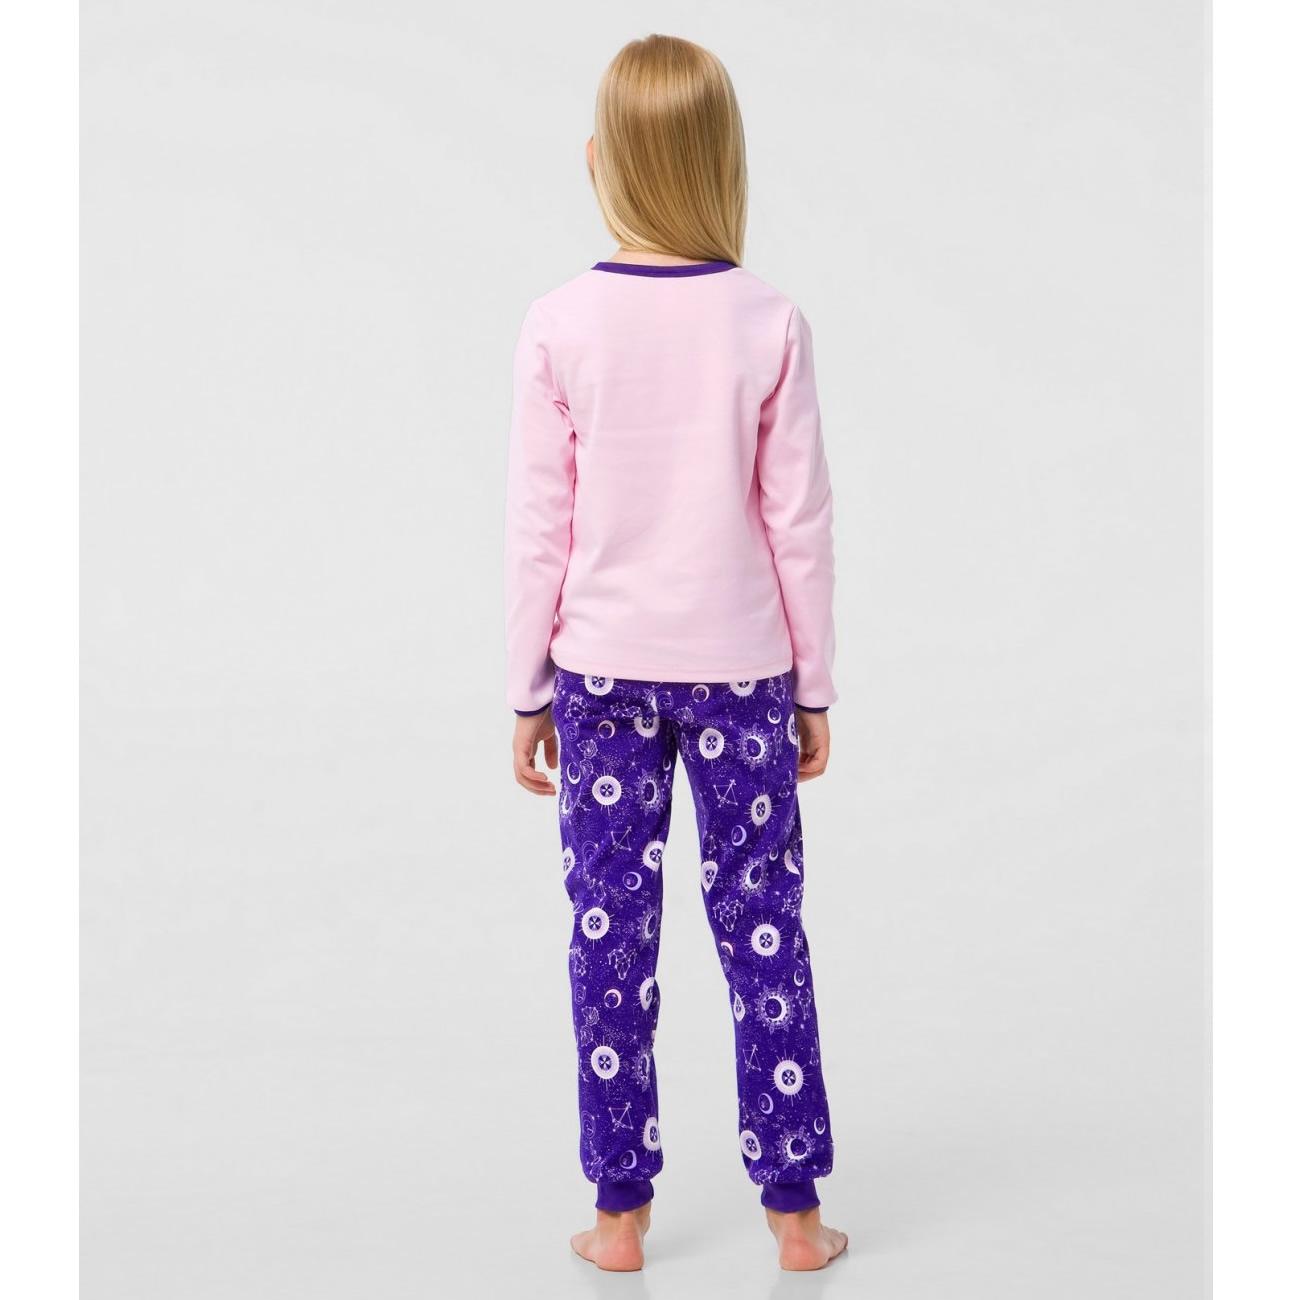 Детская пижама для девочки, розово-фиолетовая (104661), Smil (Смил)